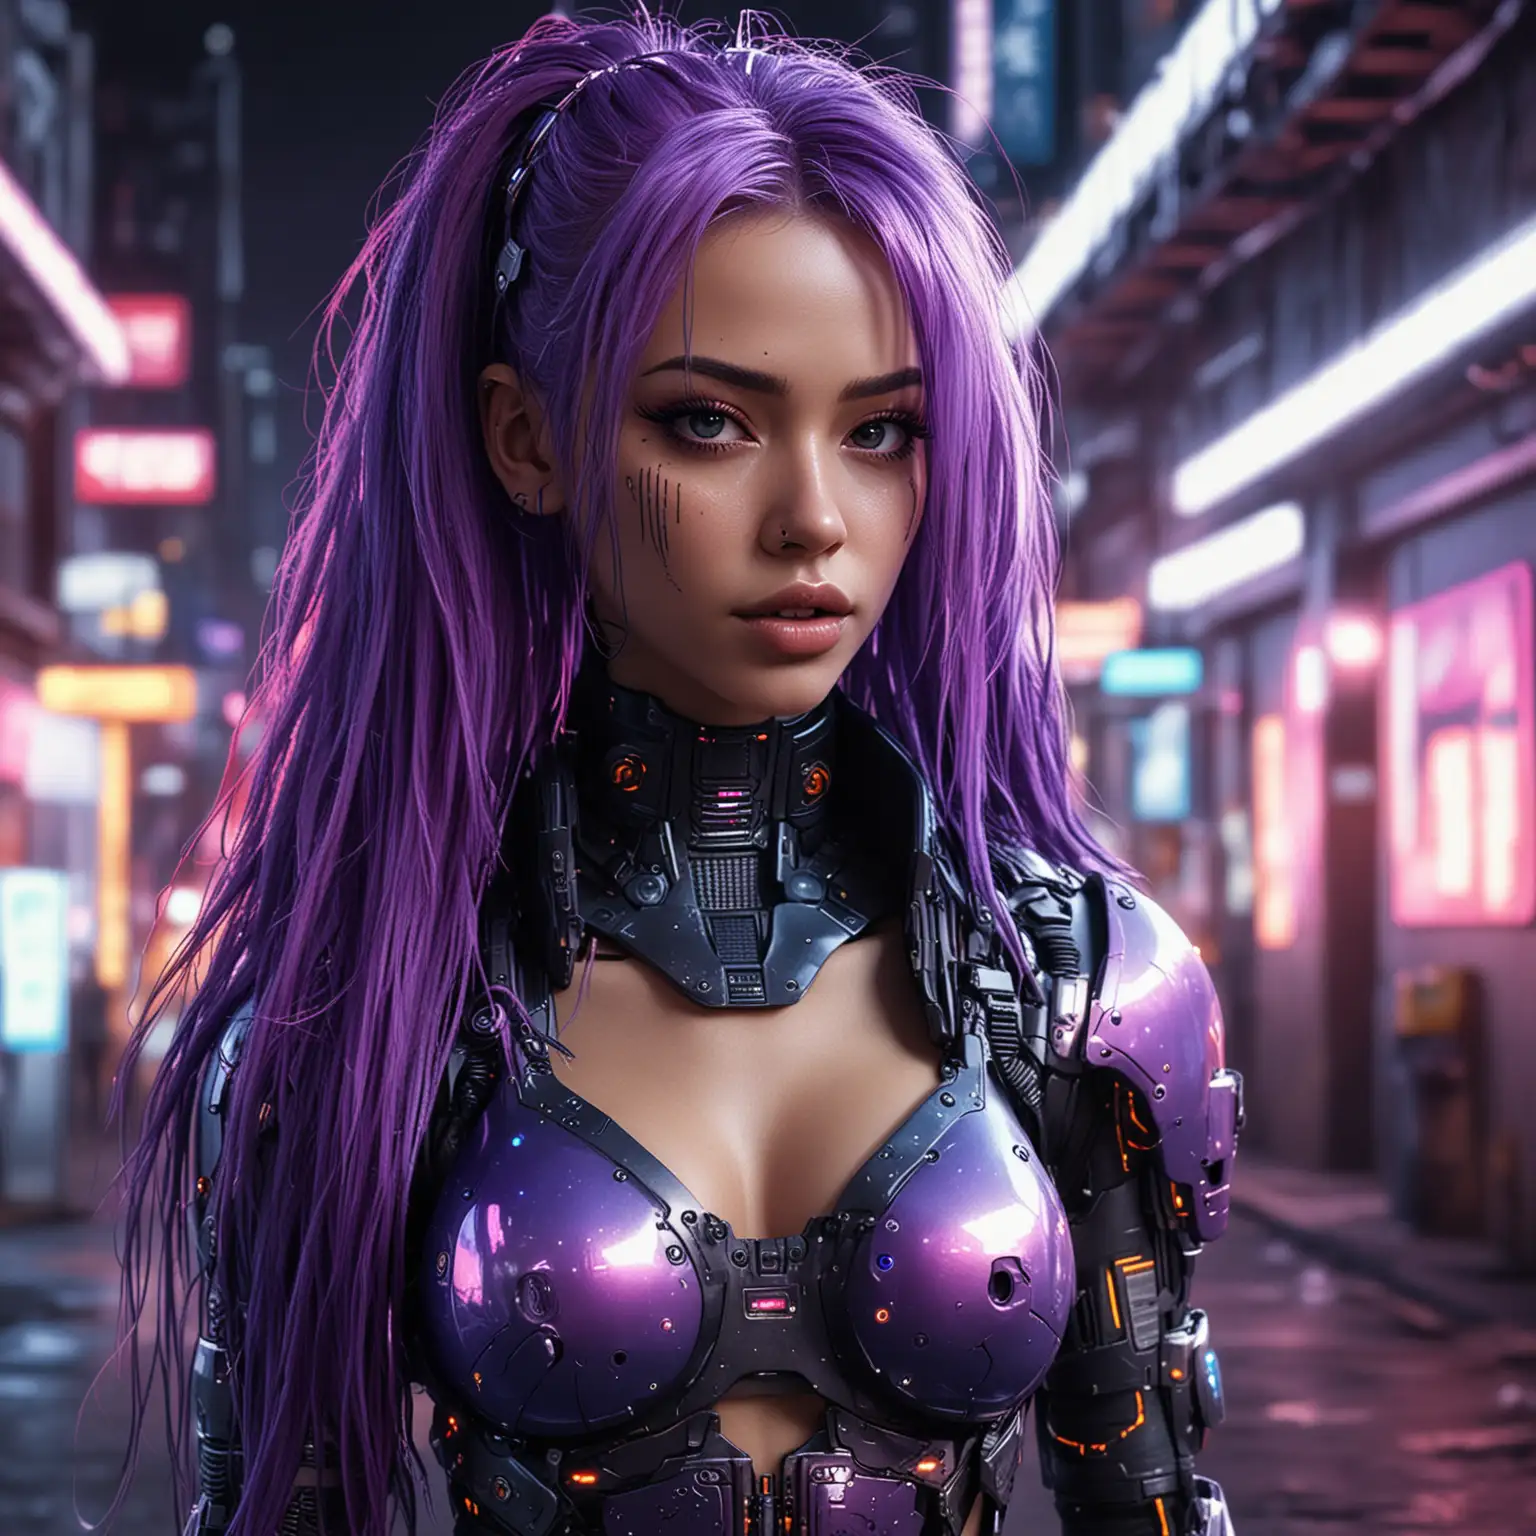 Futuristic-Cyborg-Woman-with-Glowing-Neon-Hair-in-Cyberpunk-Streetwear